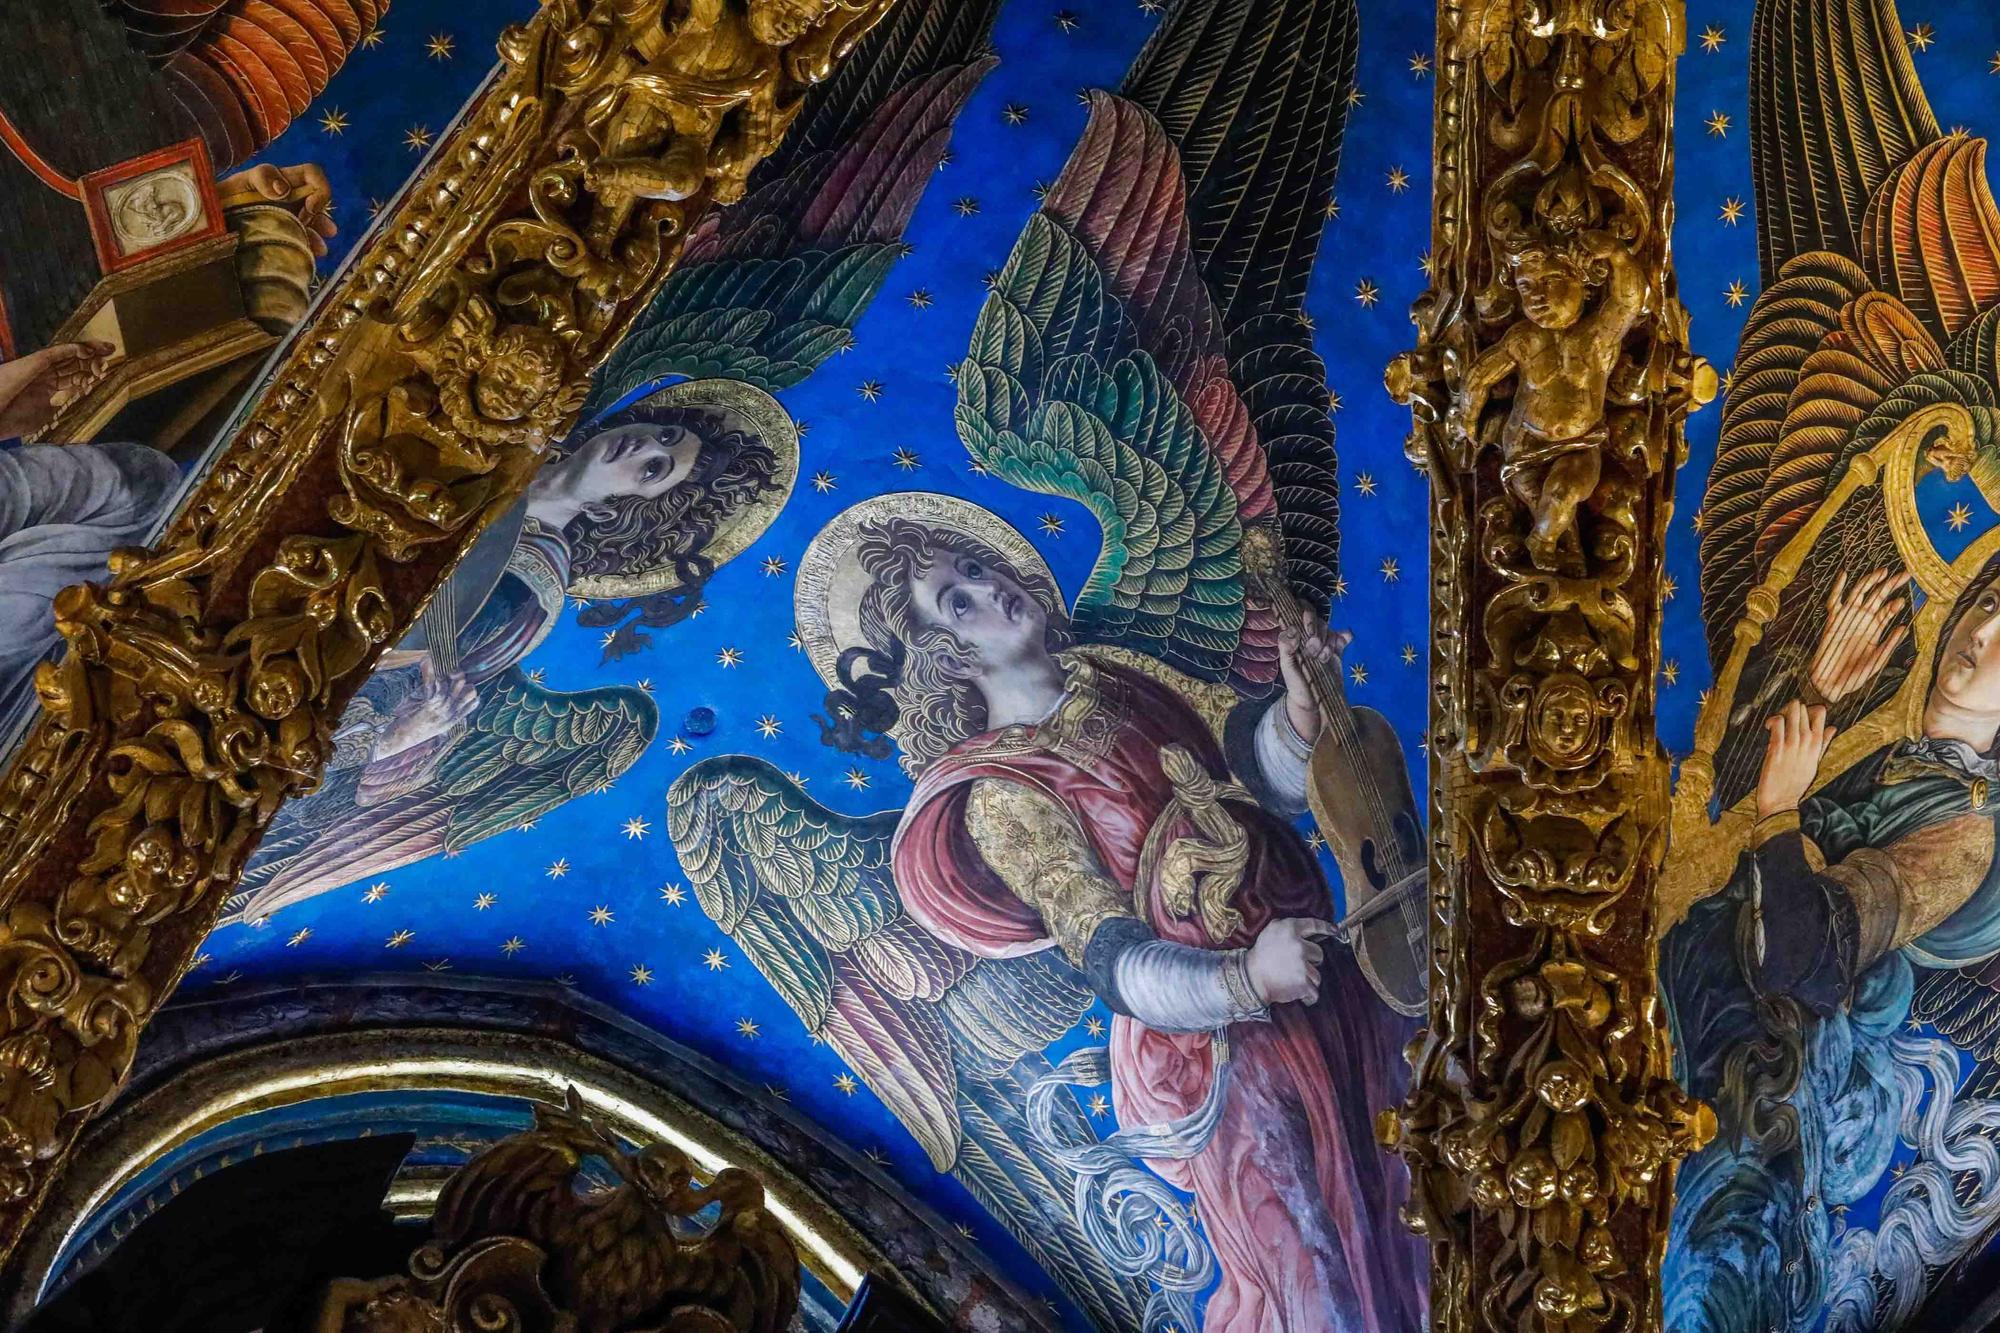 Disfruta los detalles de los "ángeles músicos" de la Catedral